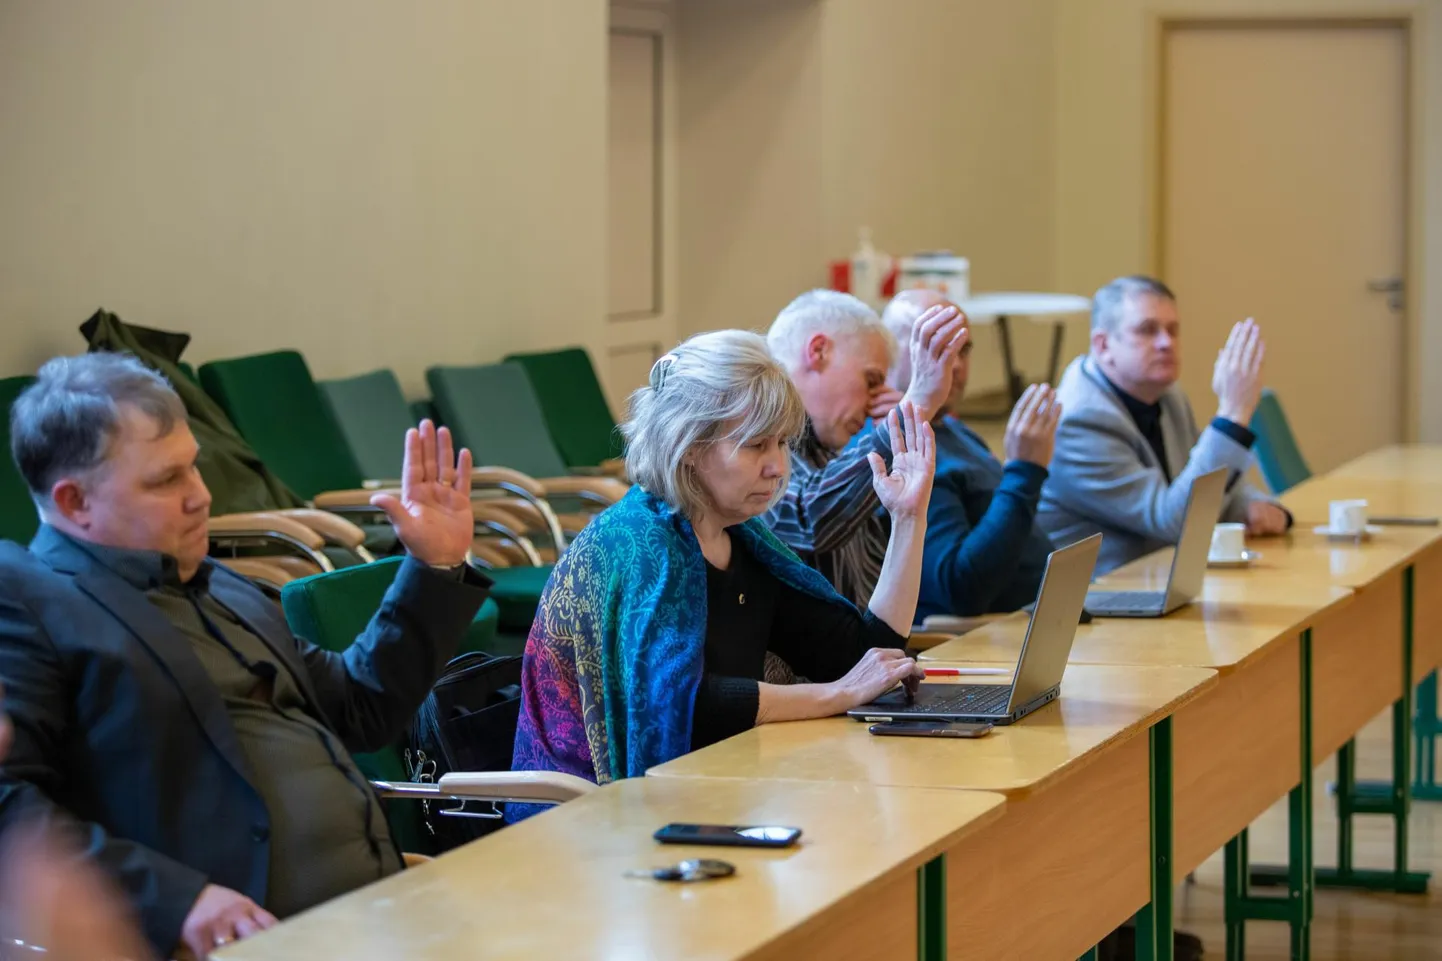 Kui 7. aprillil kogunes Põhja-Sakala volikogu, et valida uut vallavanemat, läks Kogukonna Häälest paar häält vastaspoolele. Kui siis oli sellest tulemusest keeruline mingeid järeldusi teha, siis selle nädala istung näitas, et suurim volikogu esindus on pooleks.